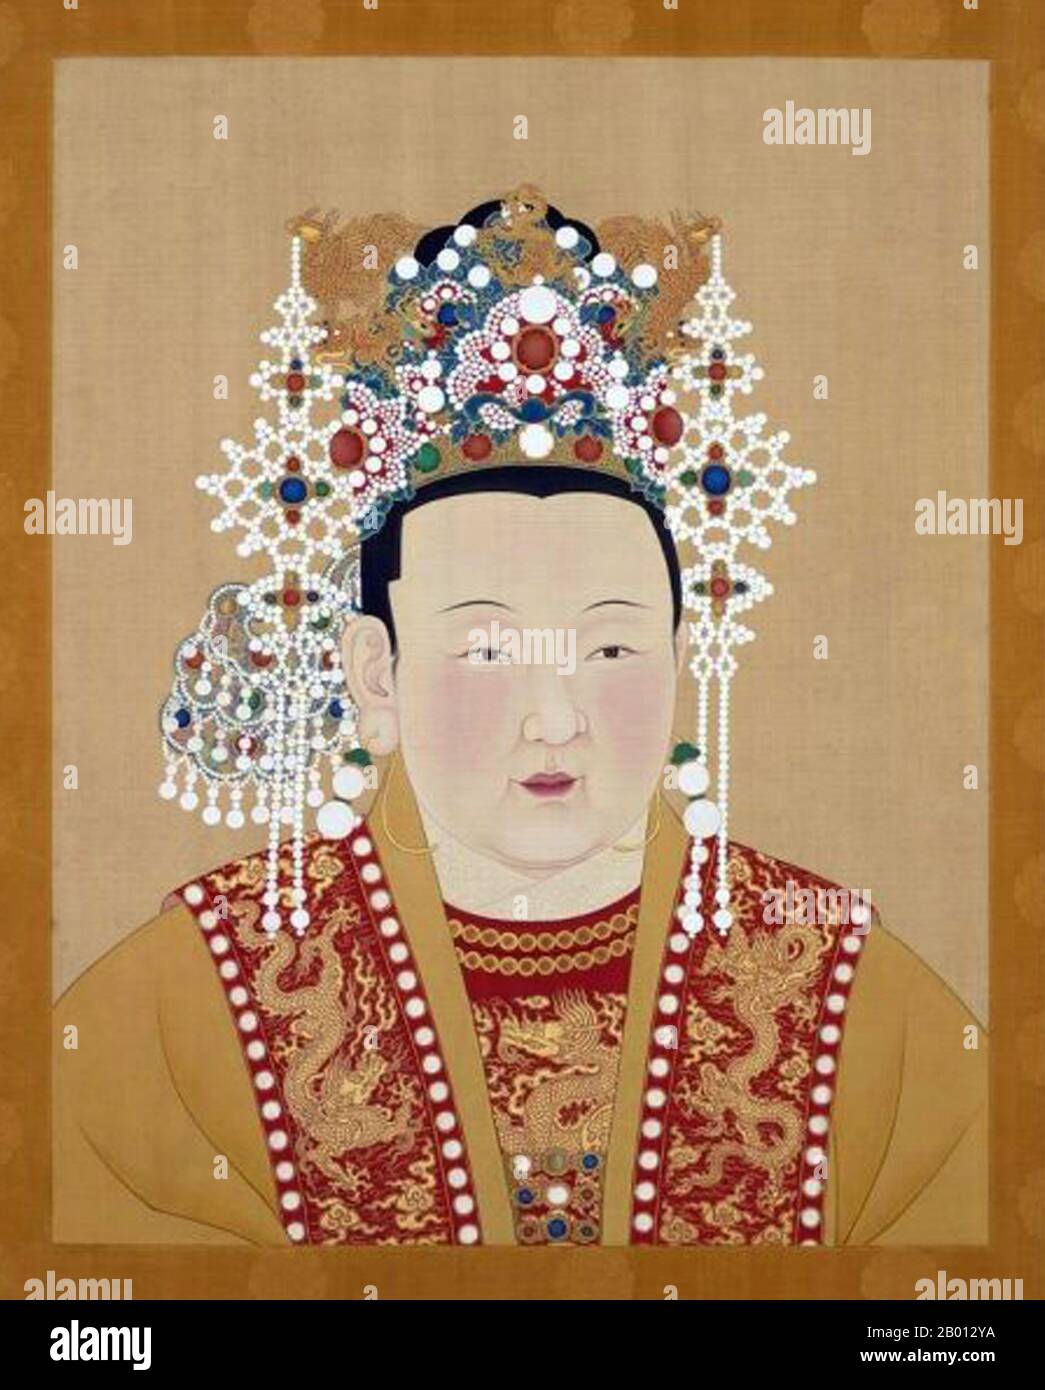 Cina: Imperatrice Ren Xiao Wen (1362-1407), consorte del 3 ° imperatore Ming YDongle (r. 1402-1424). Pittura a chiocciola sospesa, XV-XVII secolo. L'imperatrice Xu (1362 - luglio 1407), ex imperatrice Renxiaowen, nome di nascita Xu Yihua, fu la terza imperatrice della dinastia Ming dal 1402 al 1407. Suo marito era l'Imperatore Yongle. Era ben istruita, redigendo bibliografie di donne virtuose, un'attività connessa con la politica di corte. L'imperatrice Xu è anche la prima persona accreditata di trascrivere un sutra buddista da una rivelazione di sogno. Foto Stock